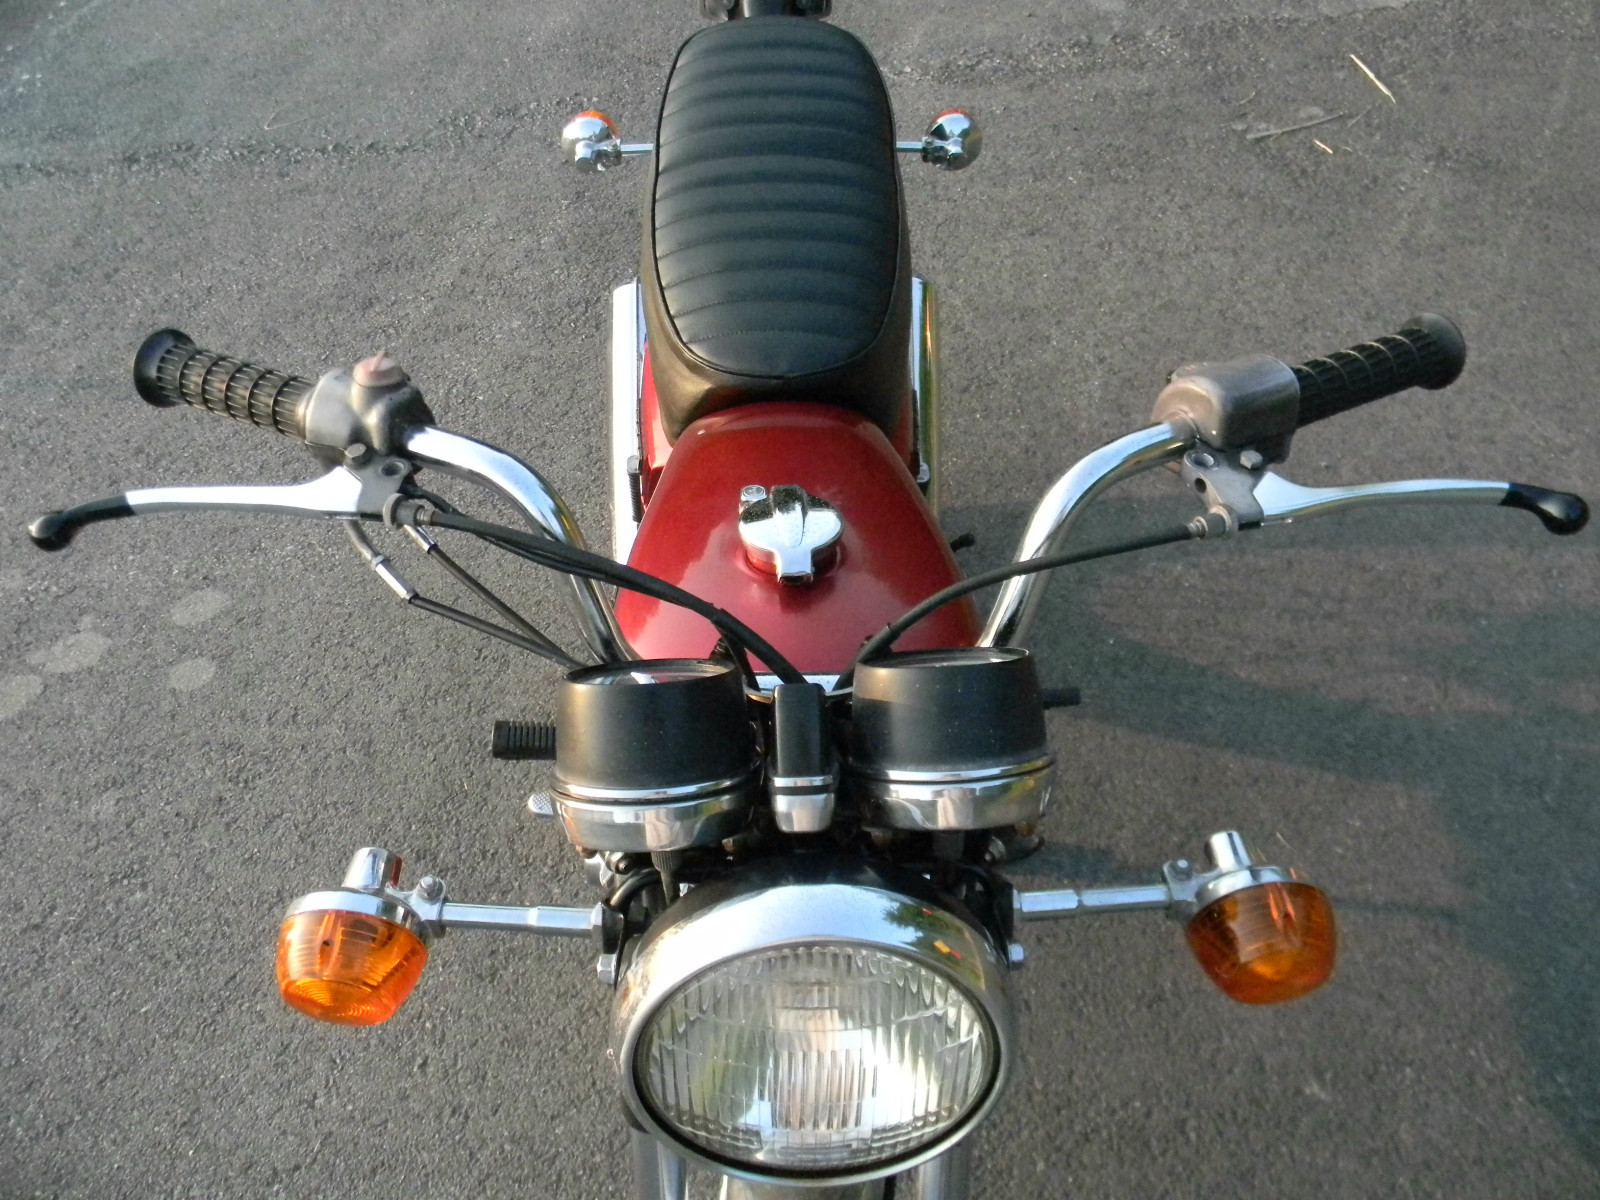 Honda CB360 - 1976